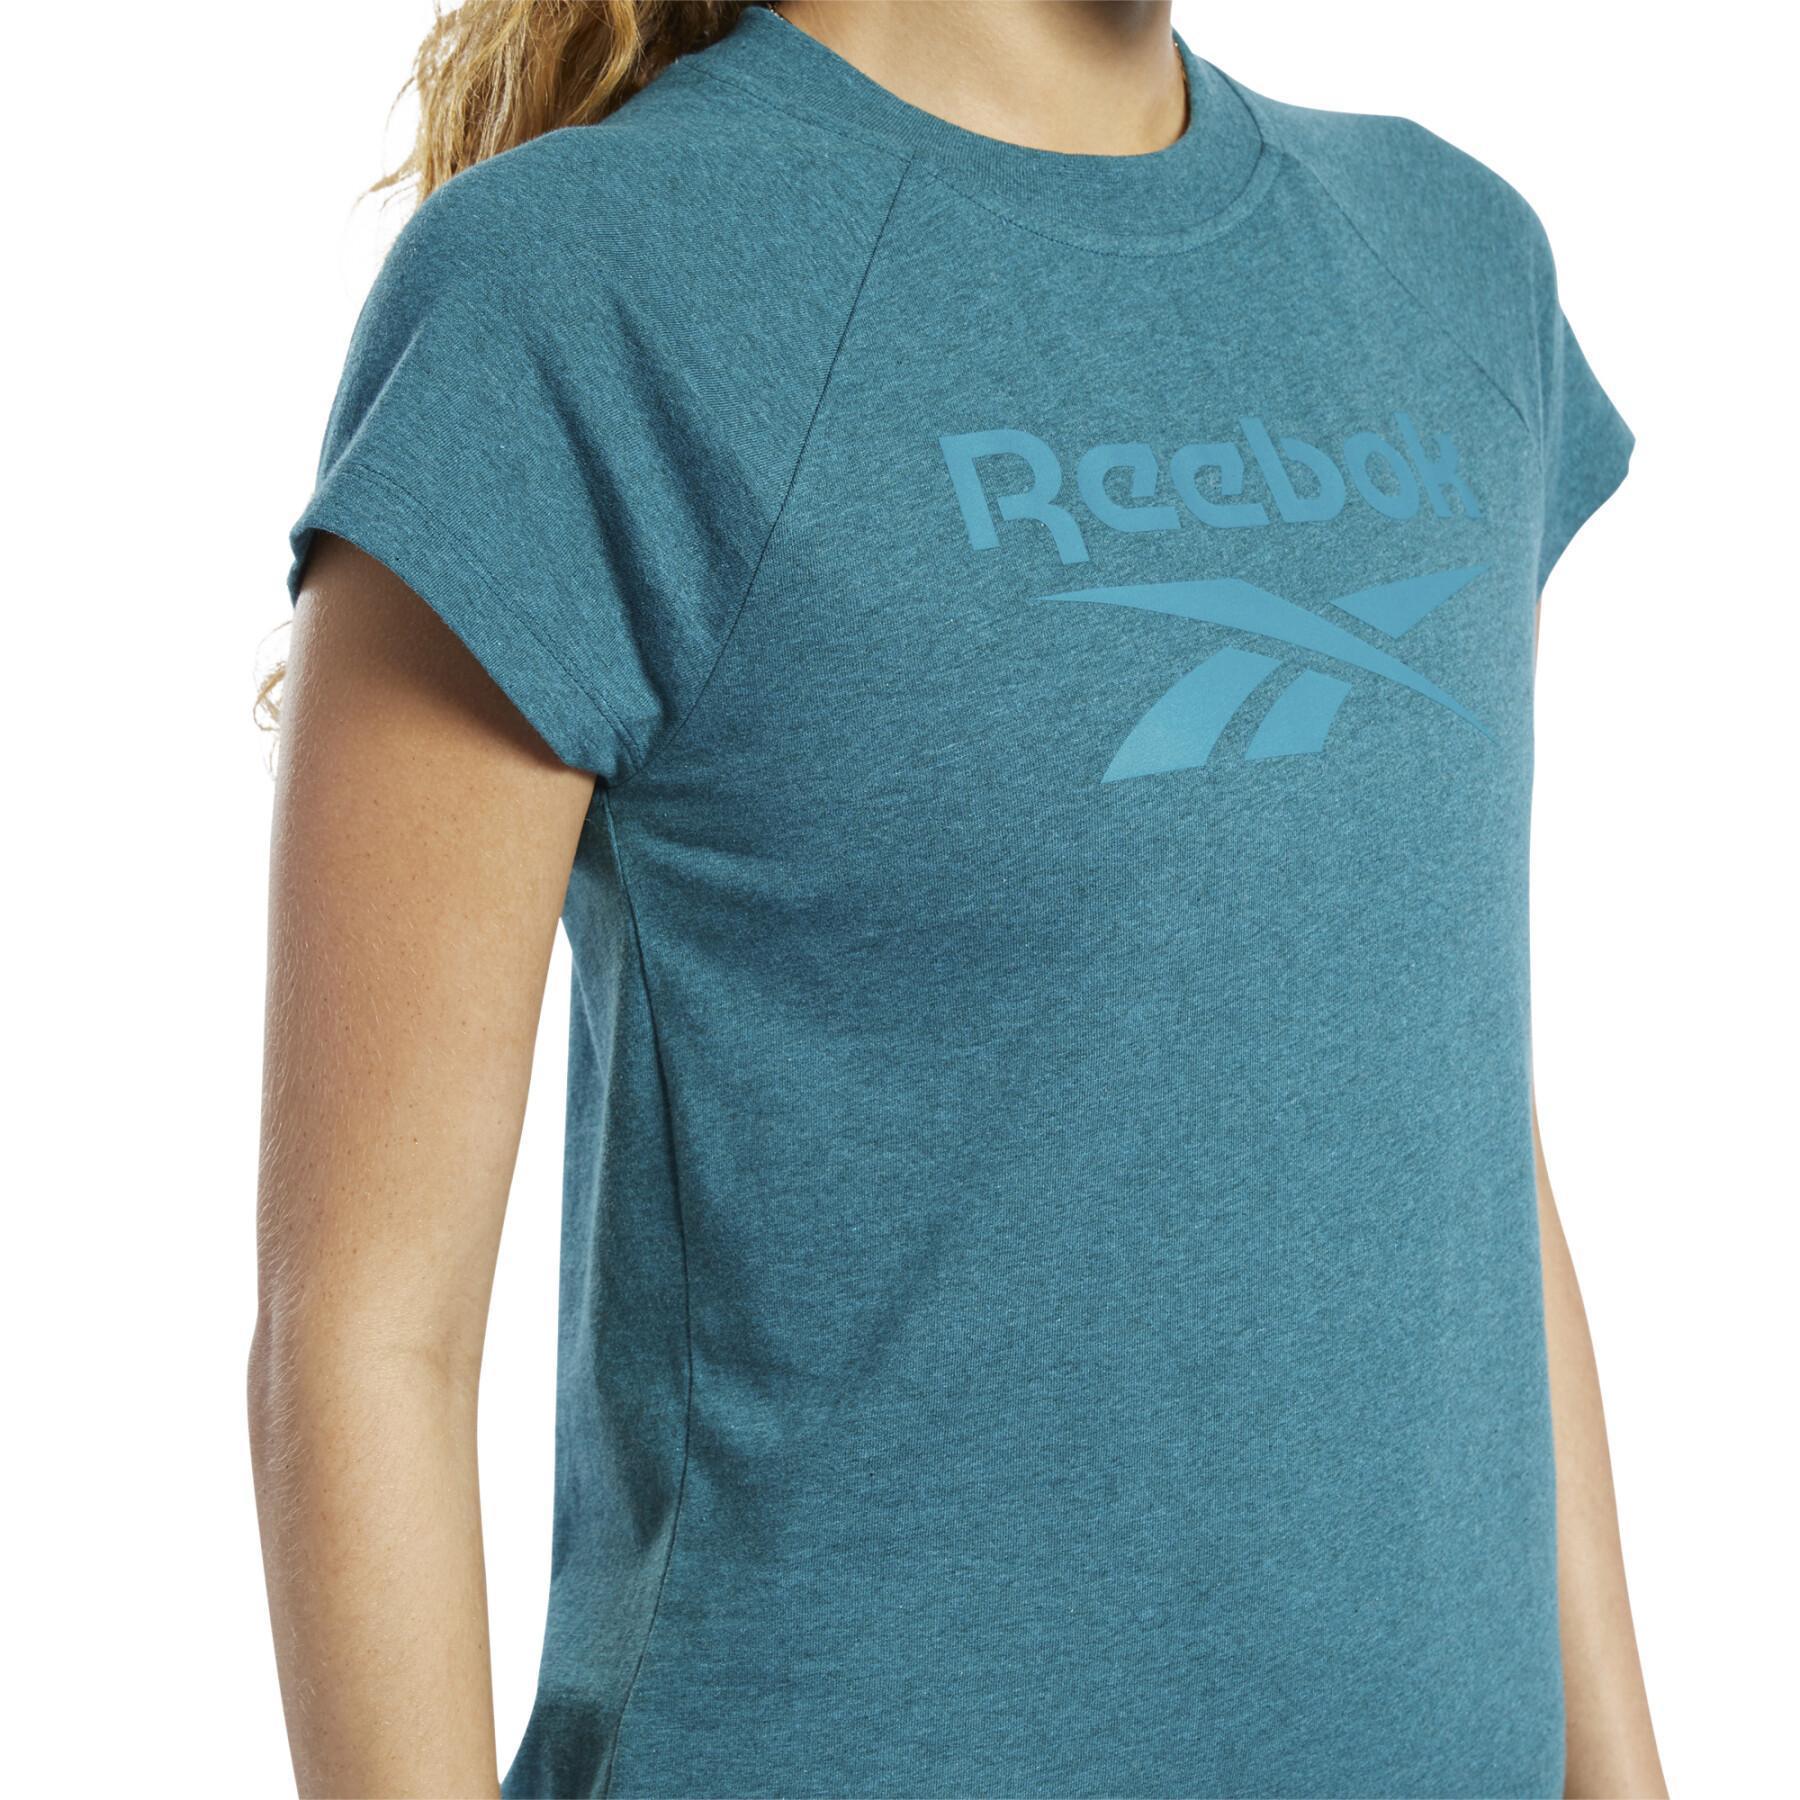 Dames-T-shirt Reebok Essentials Logo